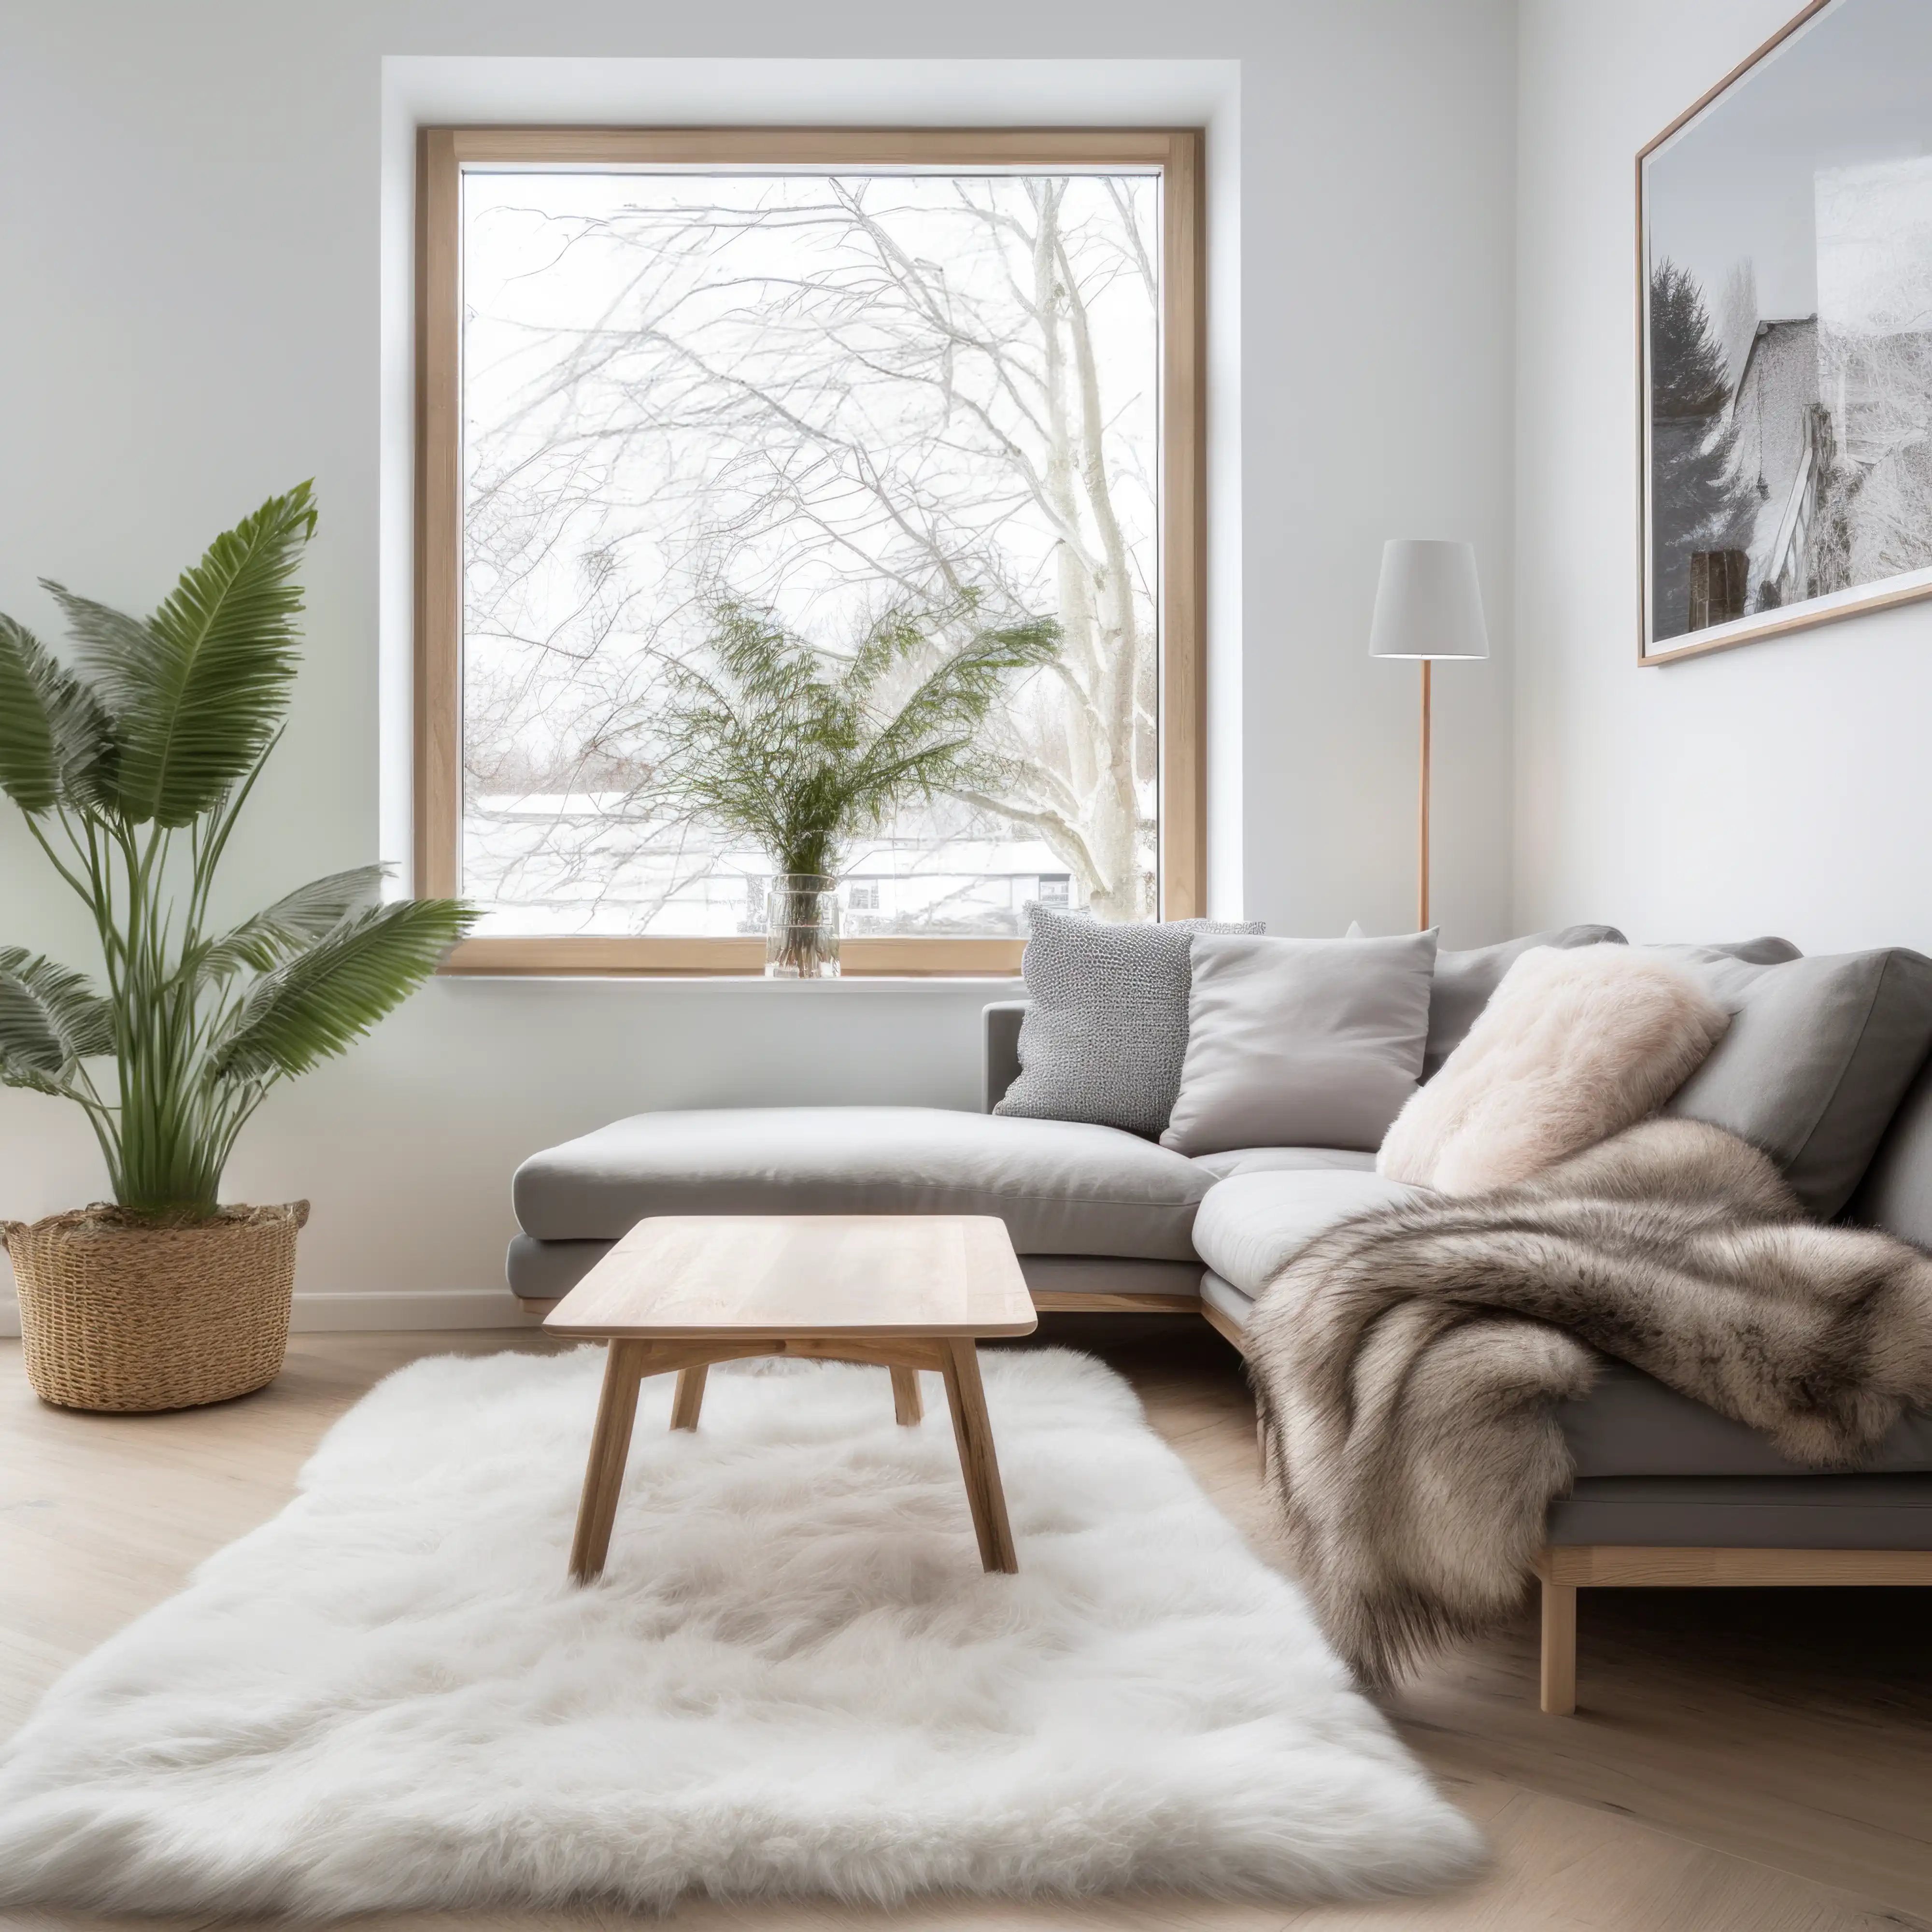 Espace de vie moderne avec une grande fenêtre, des meubles aux tons neutres et un tapis blanc moelleux, intérieur signé Sarah Brown Design